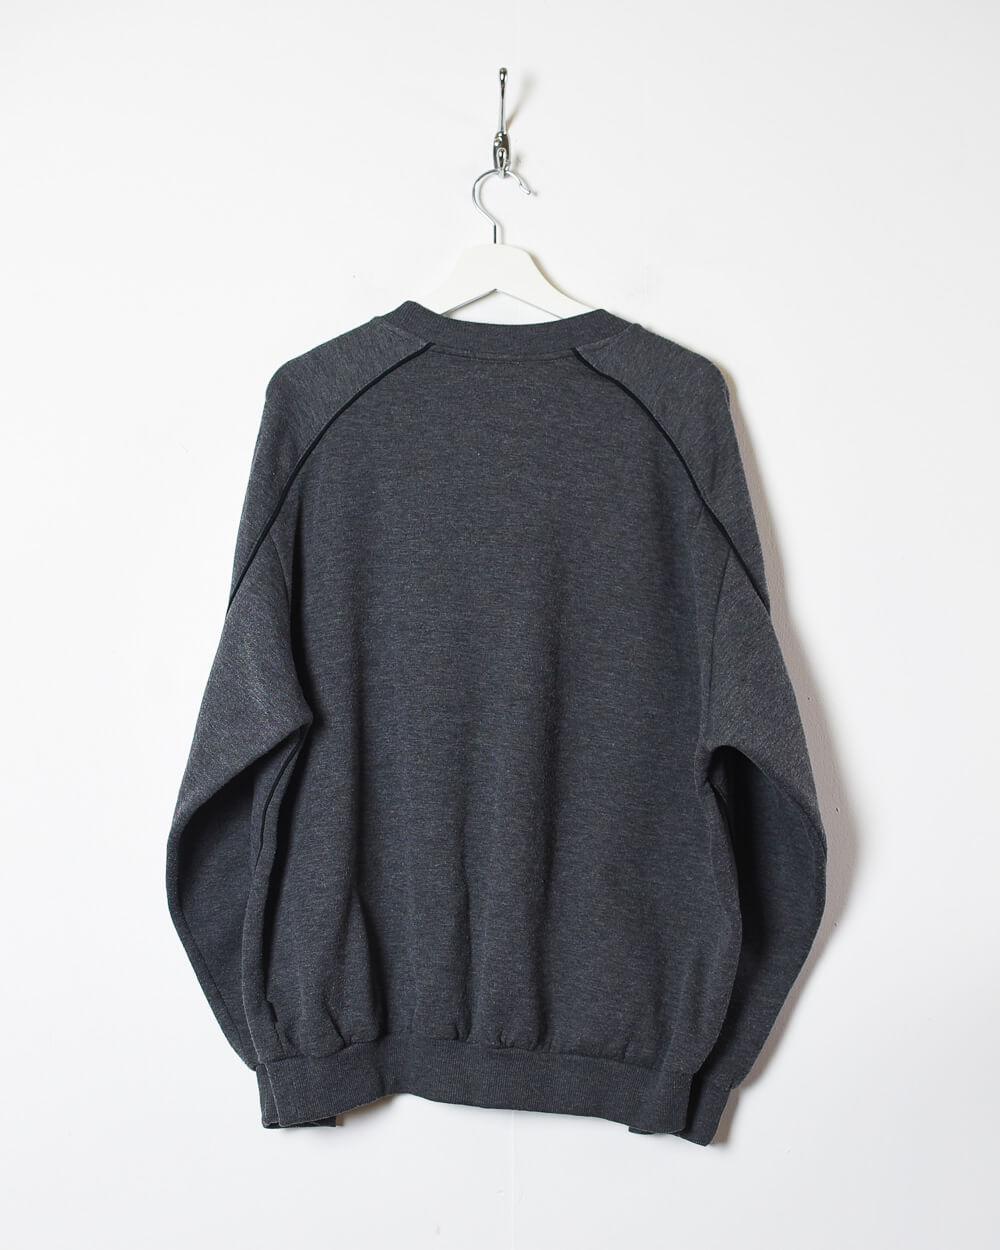 Grey Umbro Sweatshirt - Large